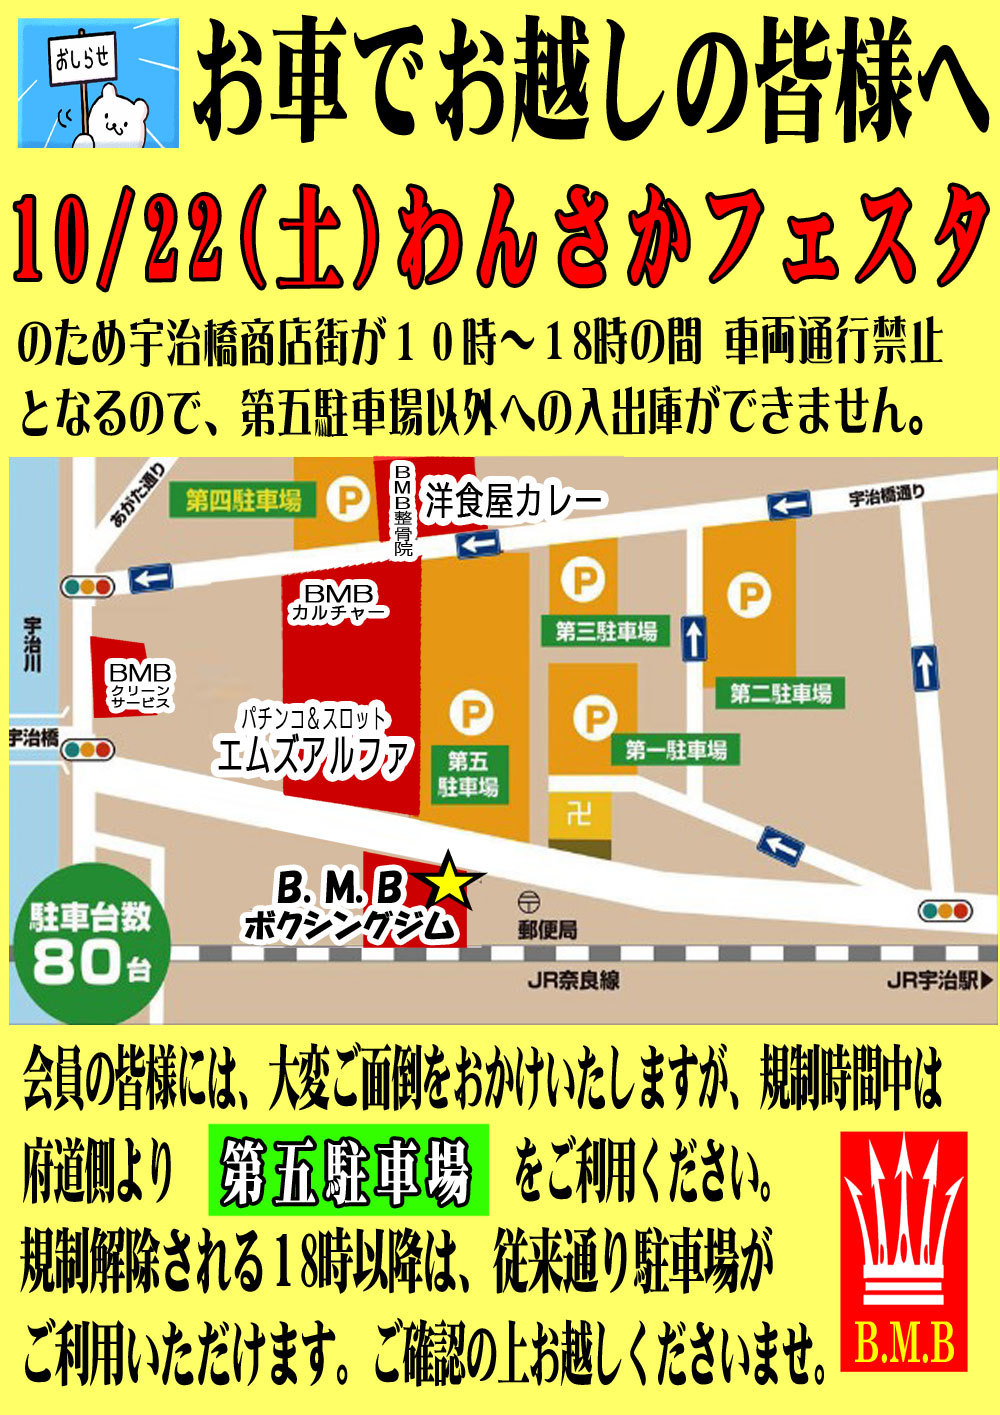 10月22日㈯わんさかフェスタ宇治橋商店街、車両通行止めにおける駐車場利用について